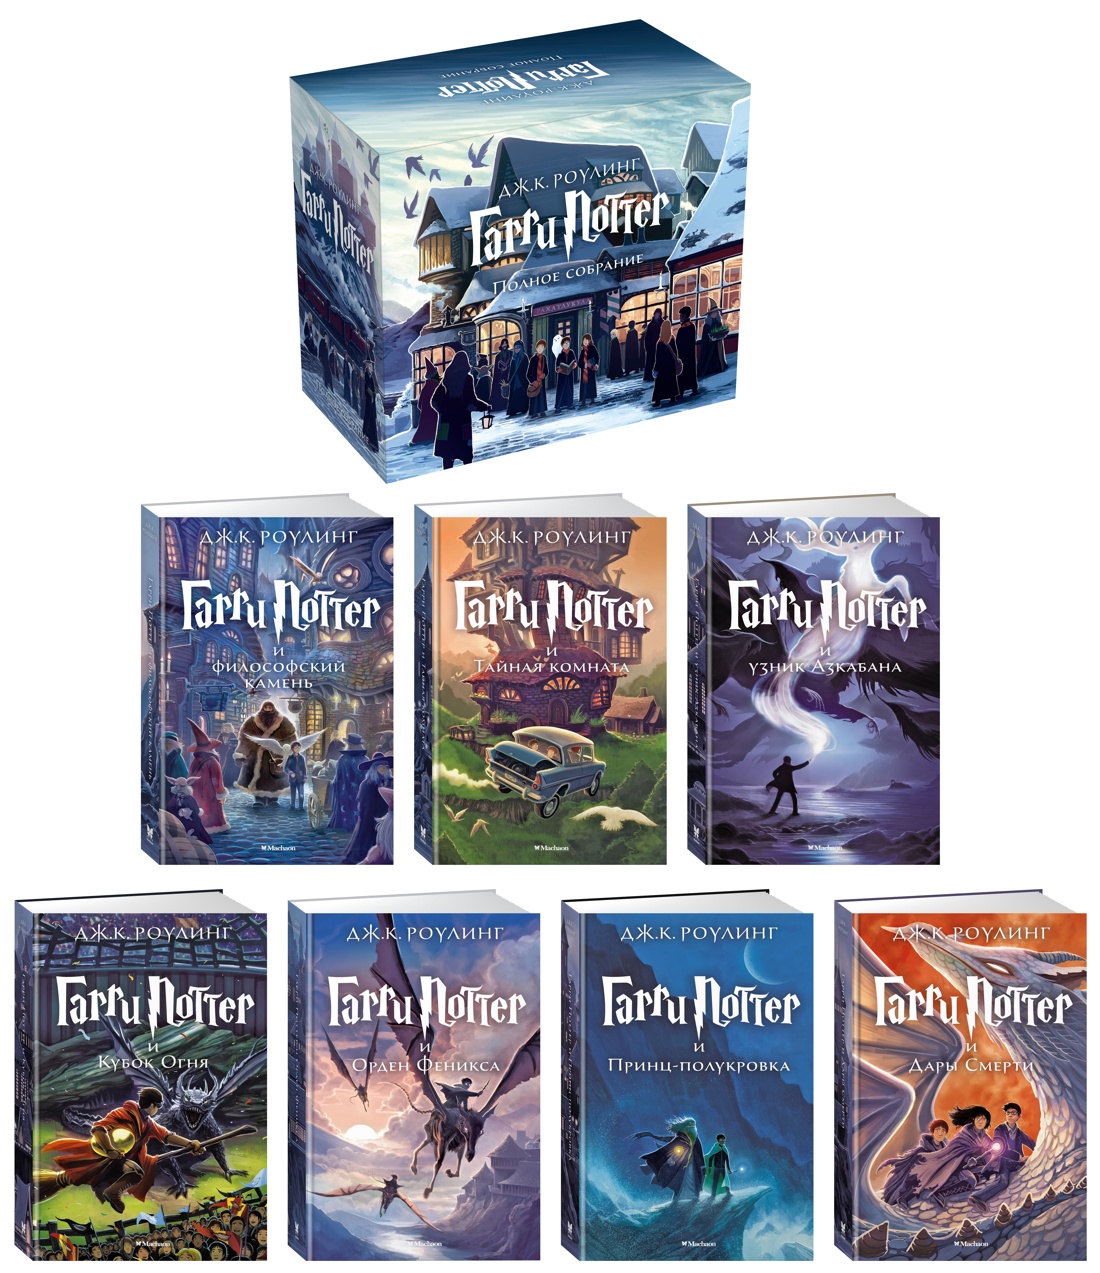 Гарри Поттер. Комплект из 7 книг в футляре, Отрывок из книги